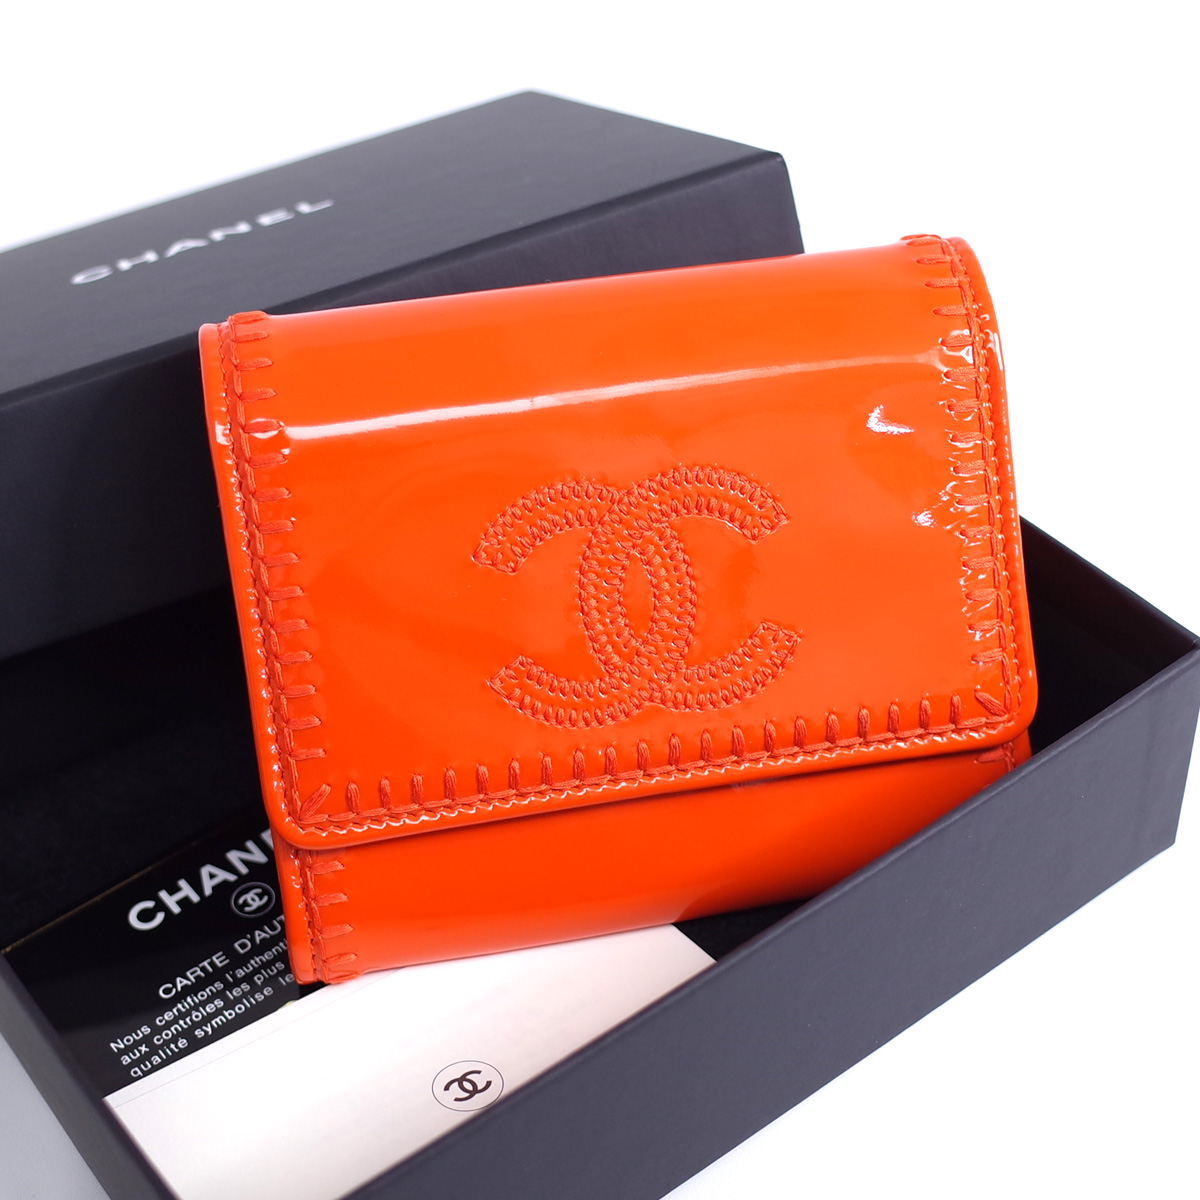 シャネル 二つ折り財布 購入 コンパクト エナメルレザー オレンジ ココマーク COCO レザー 中古 正規認証品 新規格 カード CHANEL 箱 ステッチ シール有 レディース